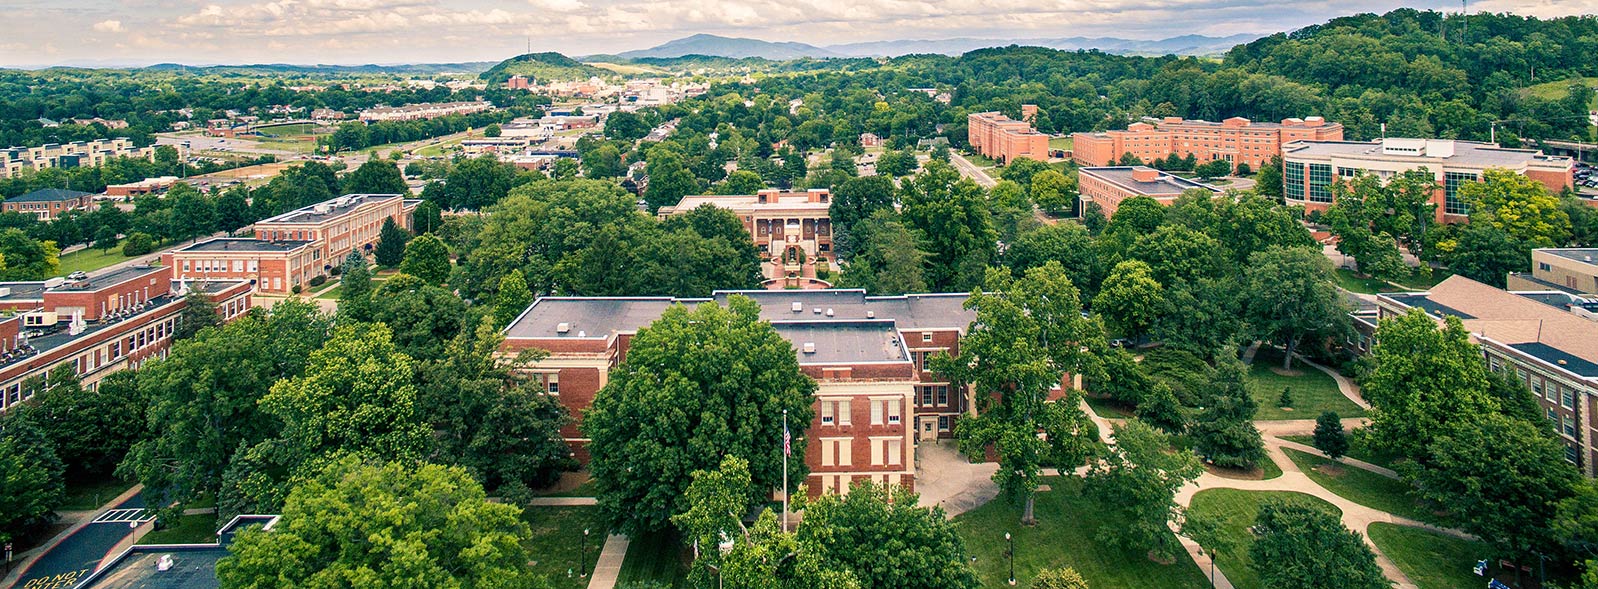 aerial view of ETSU campus